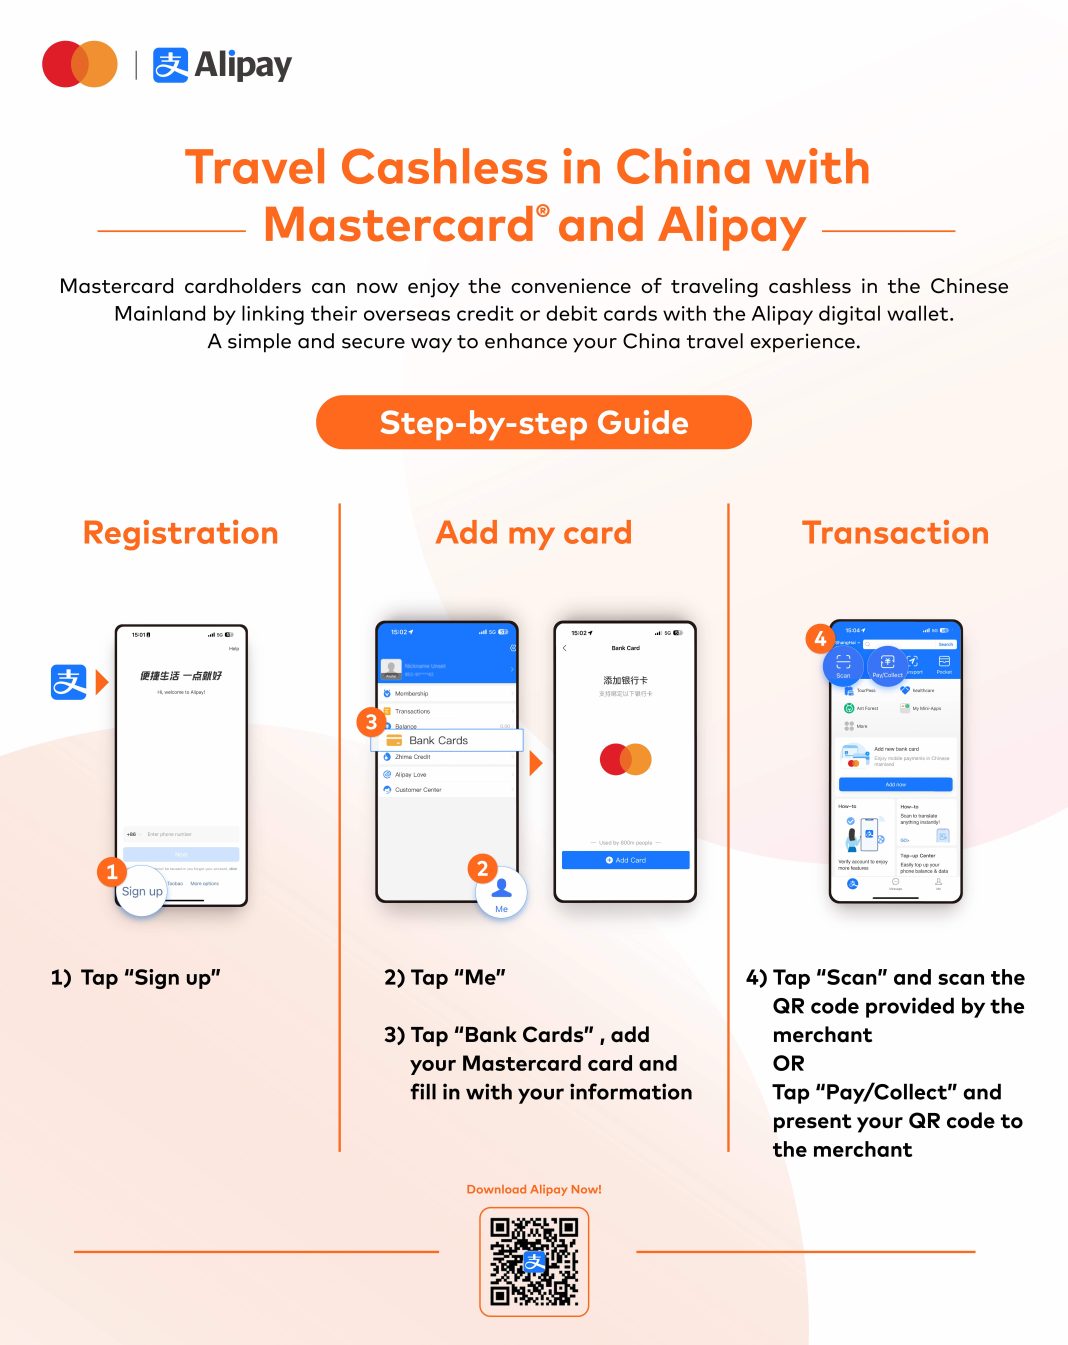 Mastercard dan Alipay mengumumkan peluncuran opsi pembayaran terbaru untuk wisatawan internasional yang berkunjung ke China dengan cara yang sederhana dan aman untuk bertransaksi secara non-tunai atau cashless.